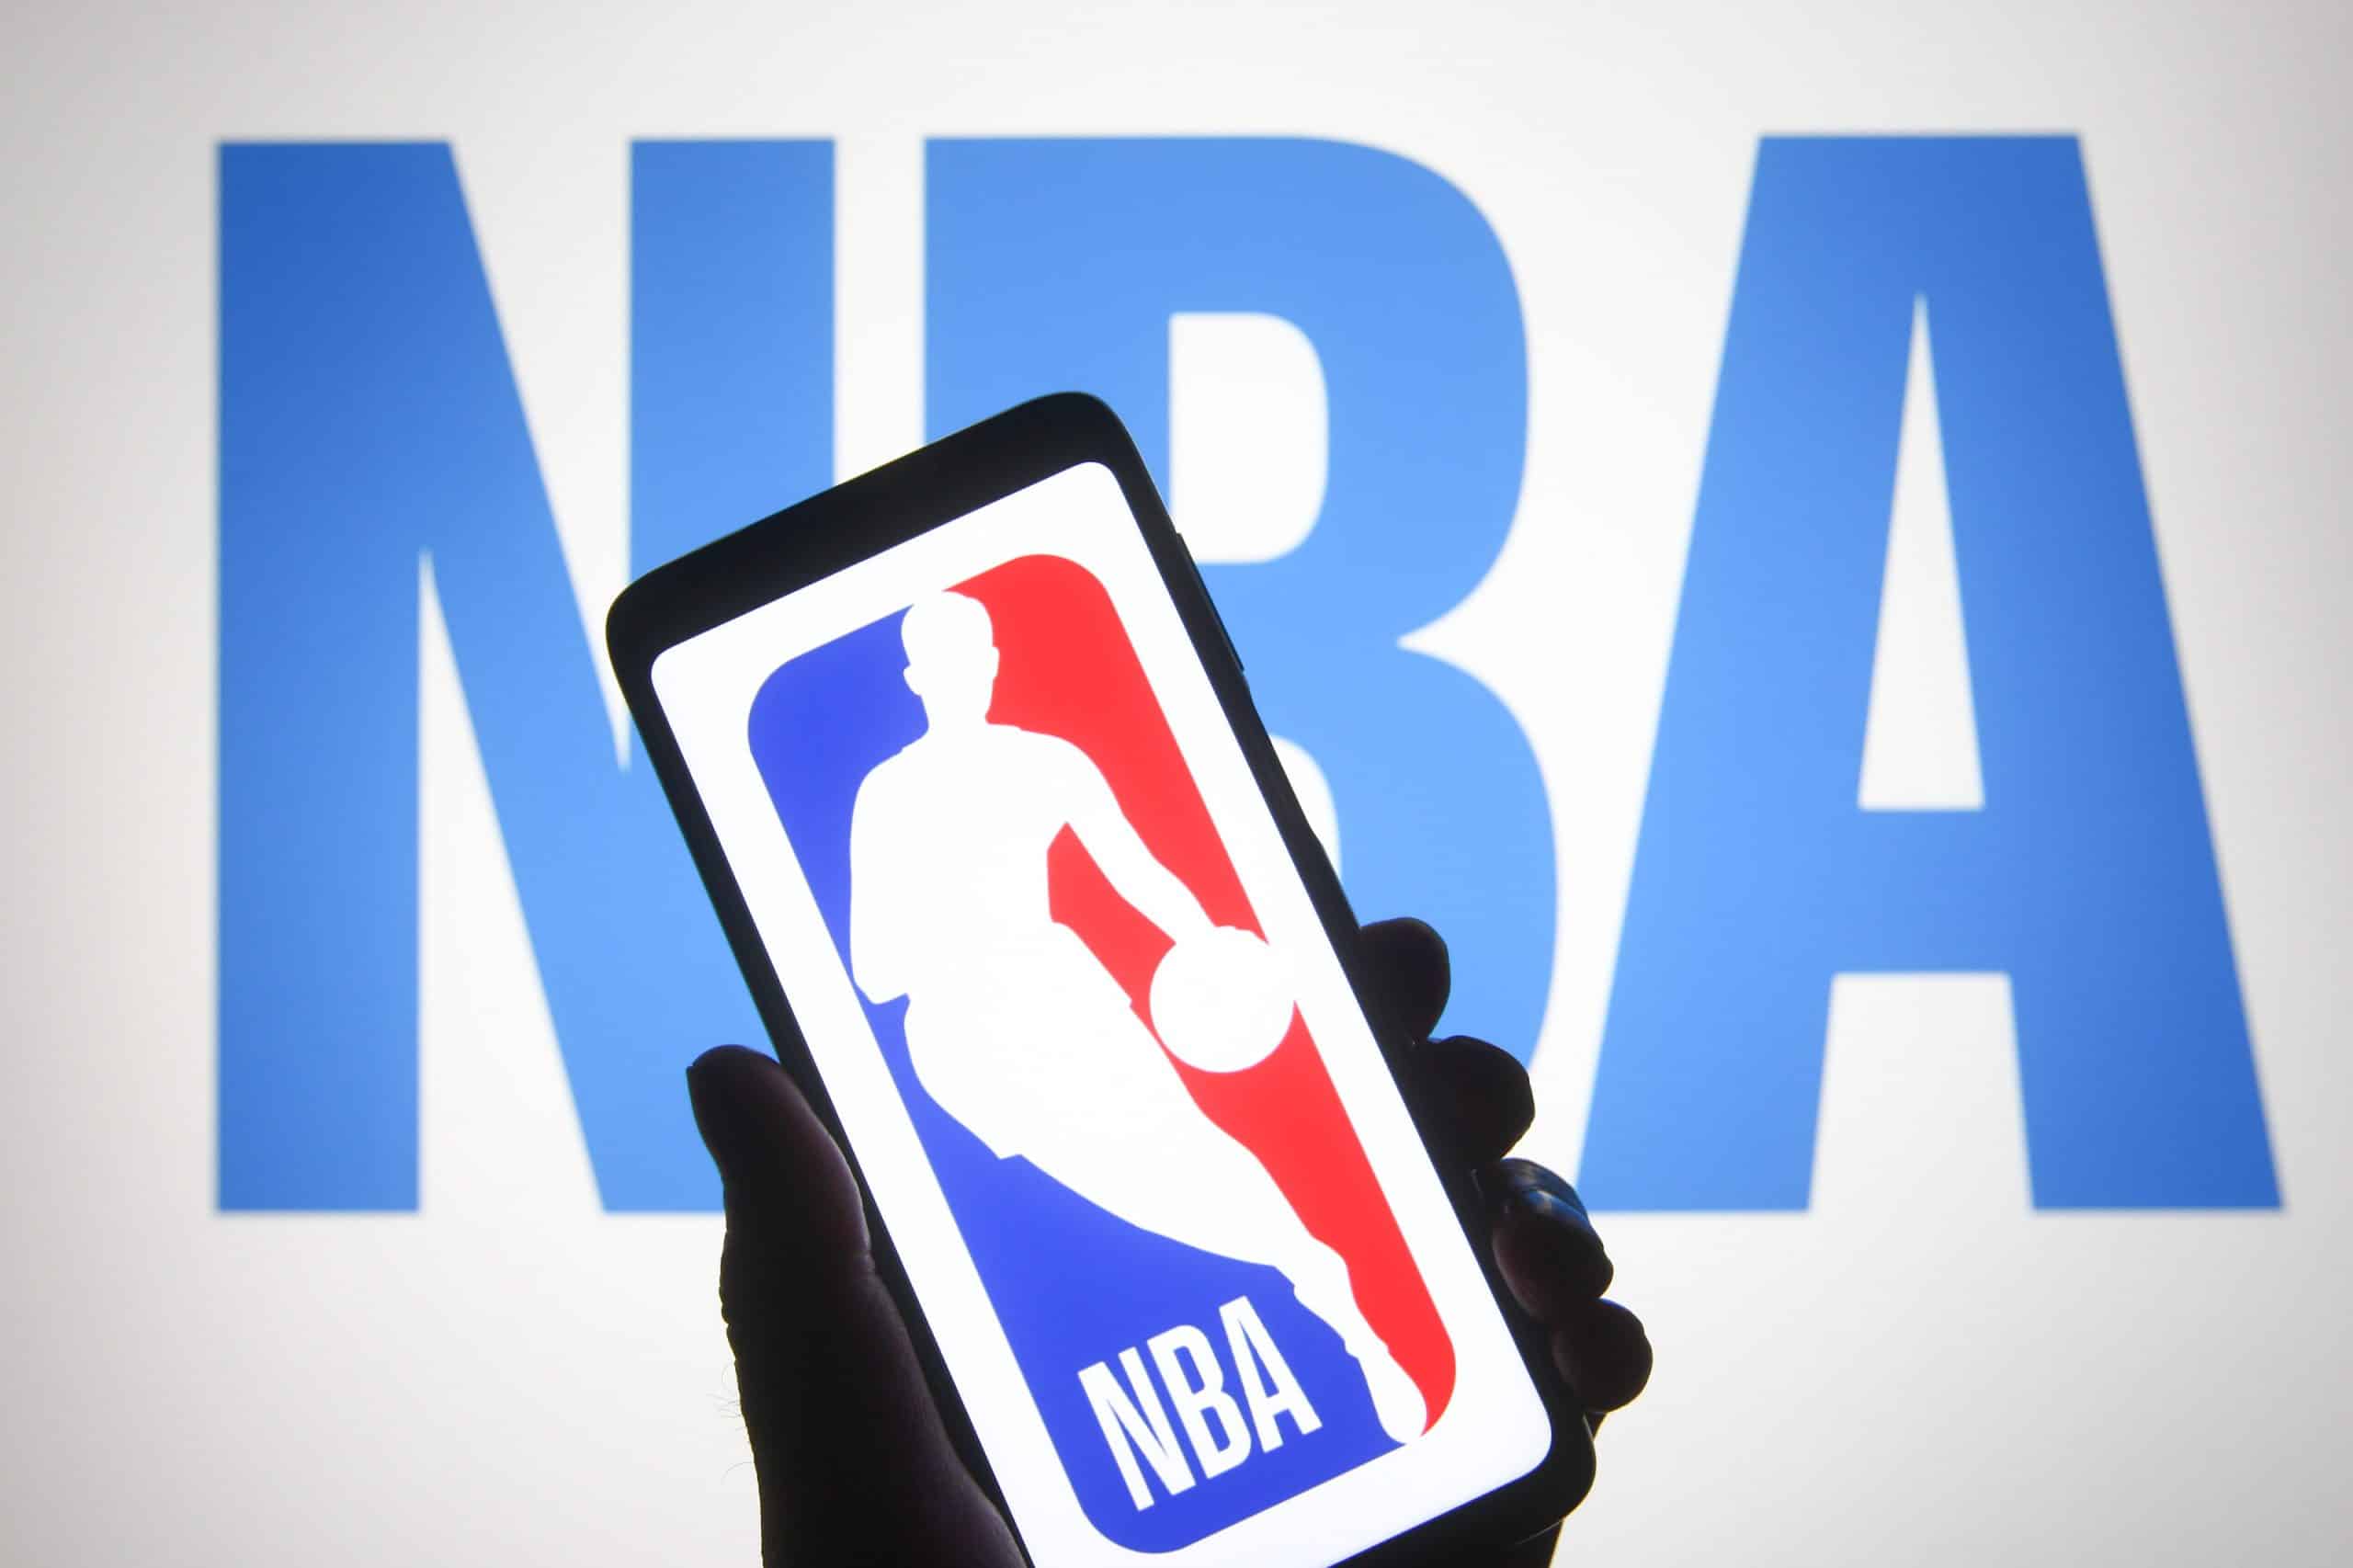 Assinaturas do NBA League Pass estará disponível via Prime Video